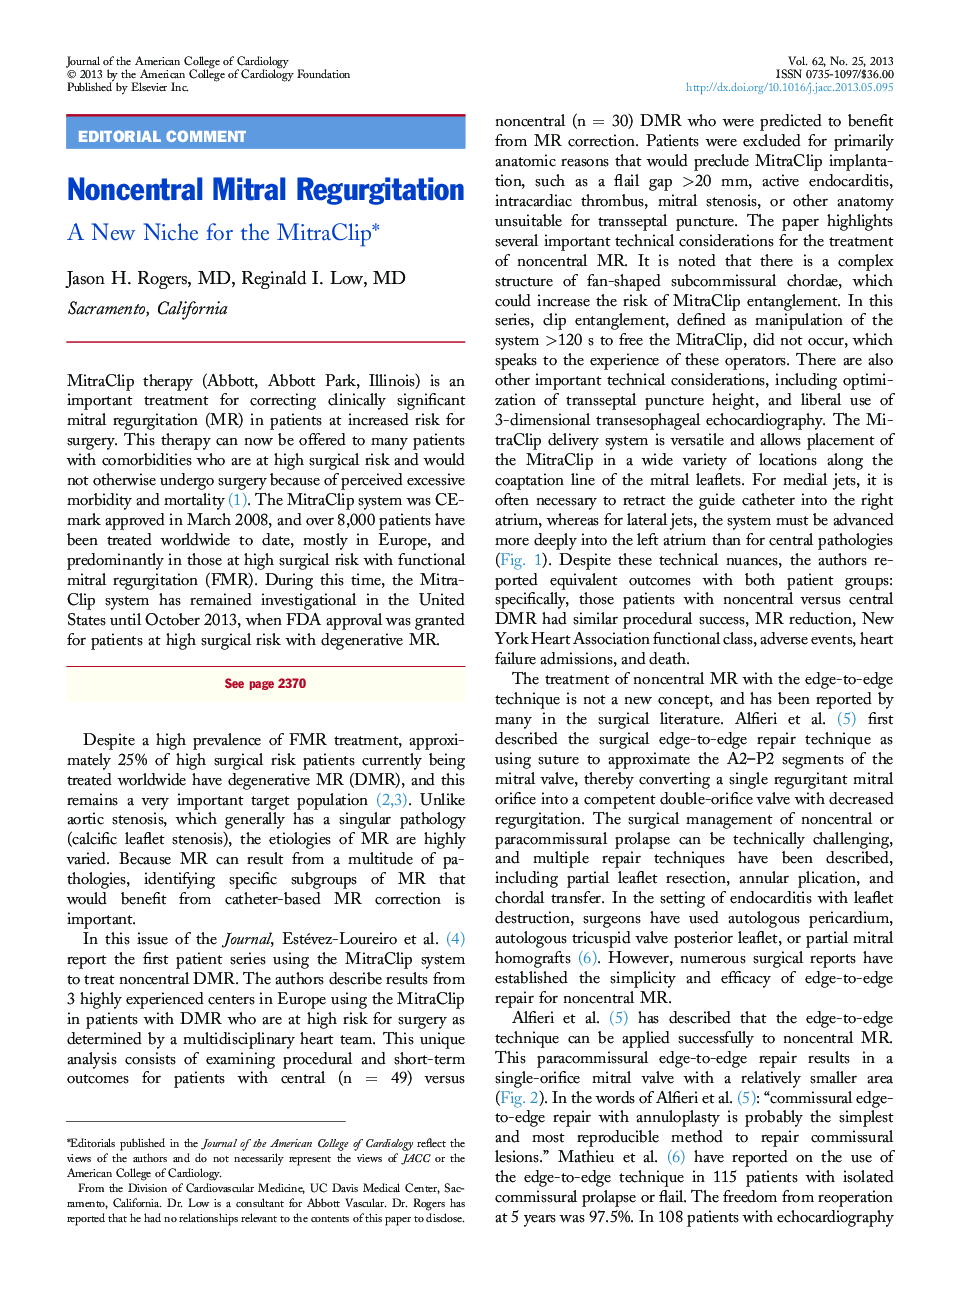 Noncentral Mitral Regurgitation